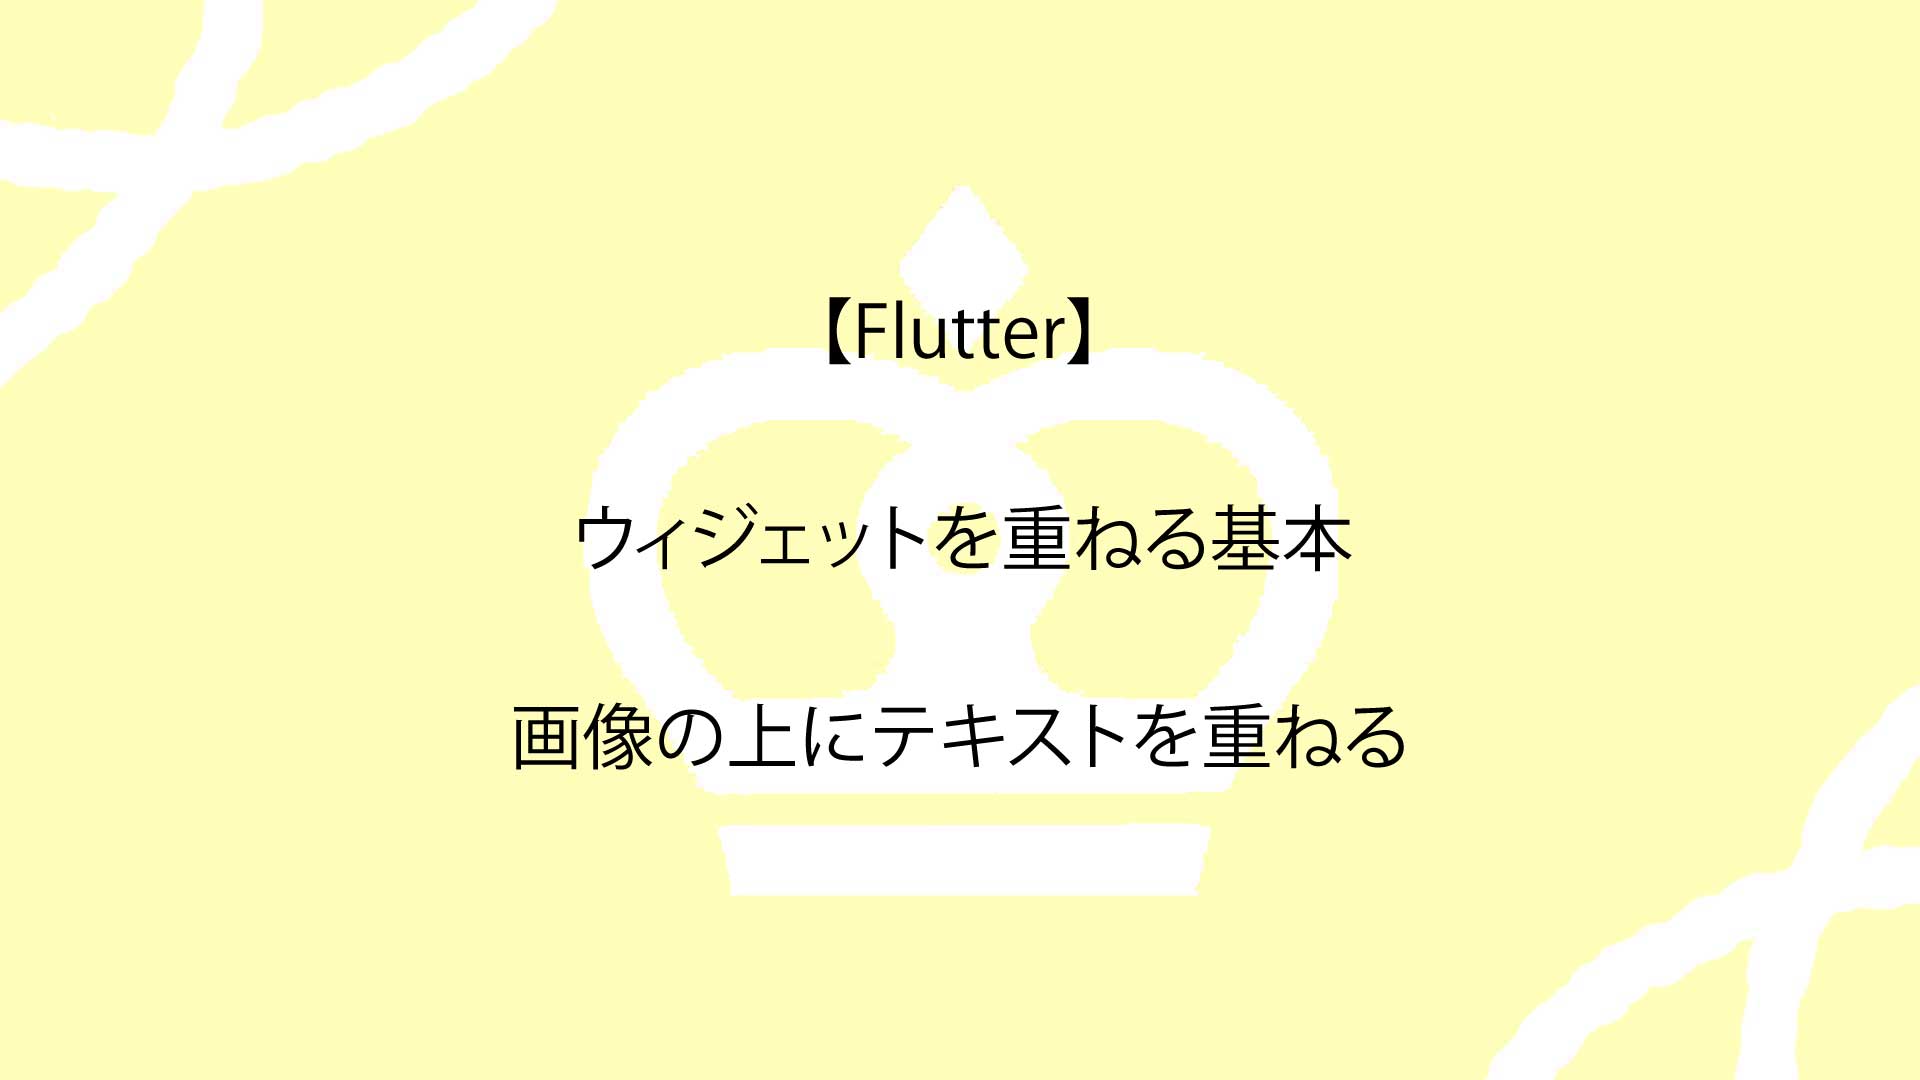 【Flutter】ウィジェットを重ねる方法についてスマホアプリ開発会社が解説！